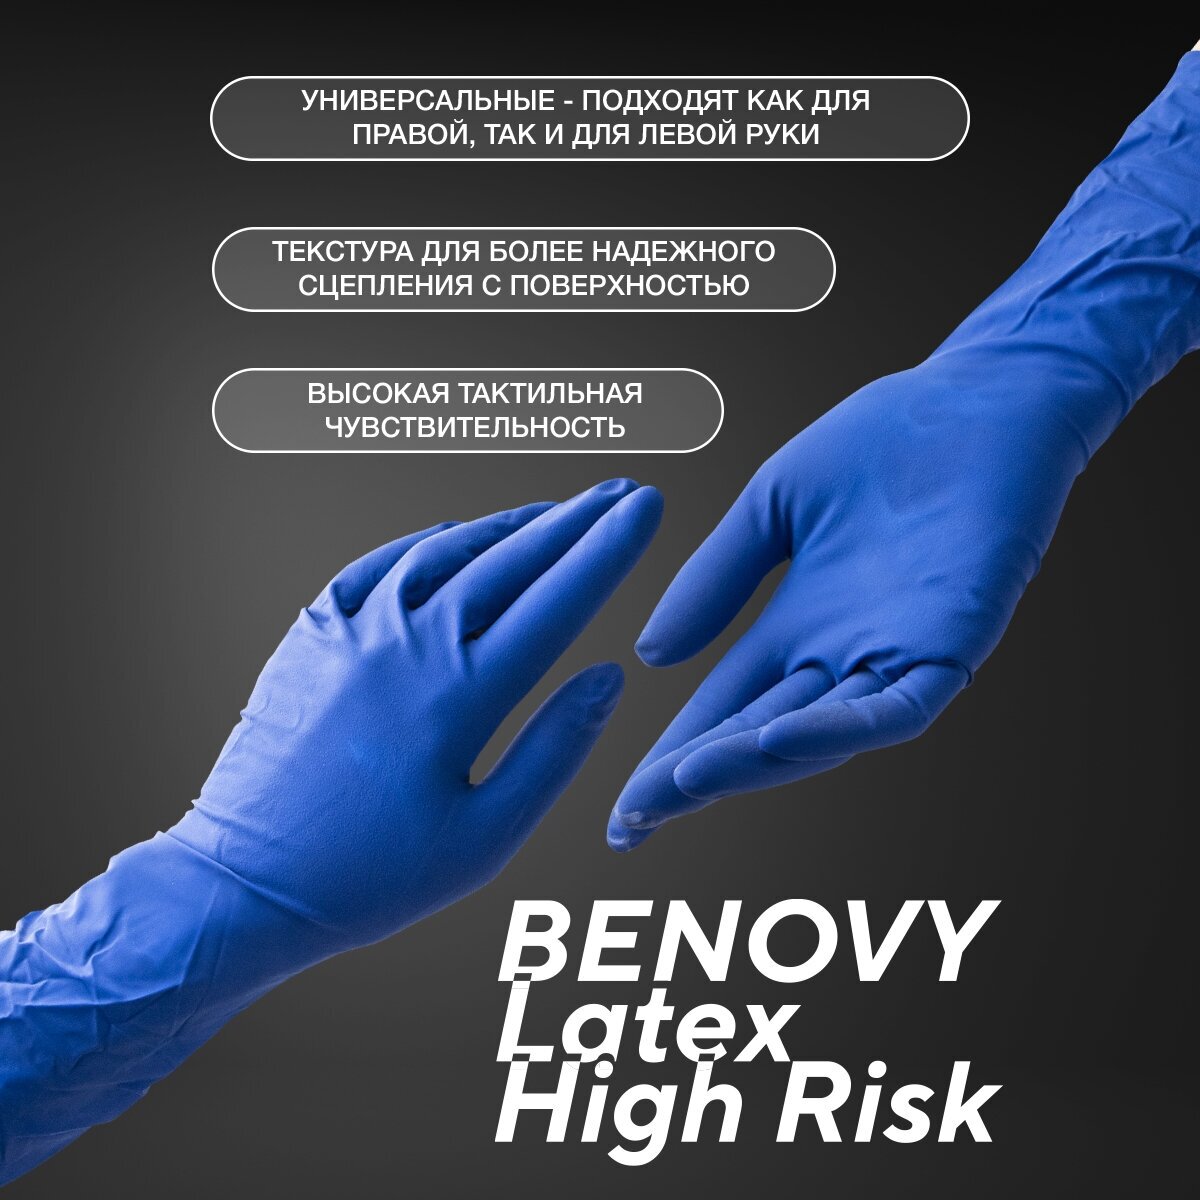 Перчатки смотровые латексные Benovy Latex High Risk текстурированные неопудренные размер M синий 25 пар